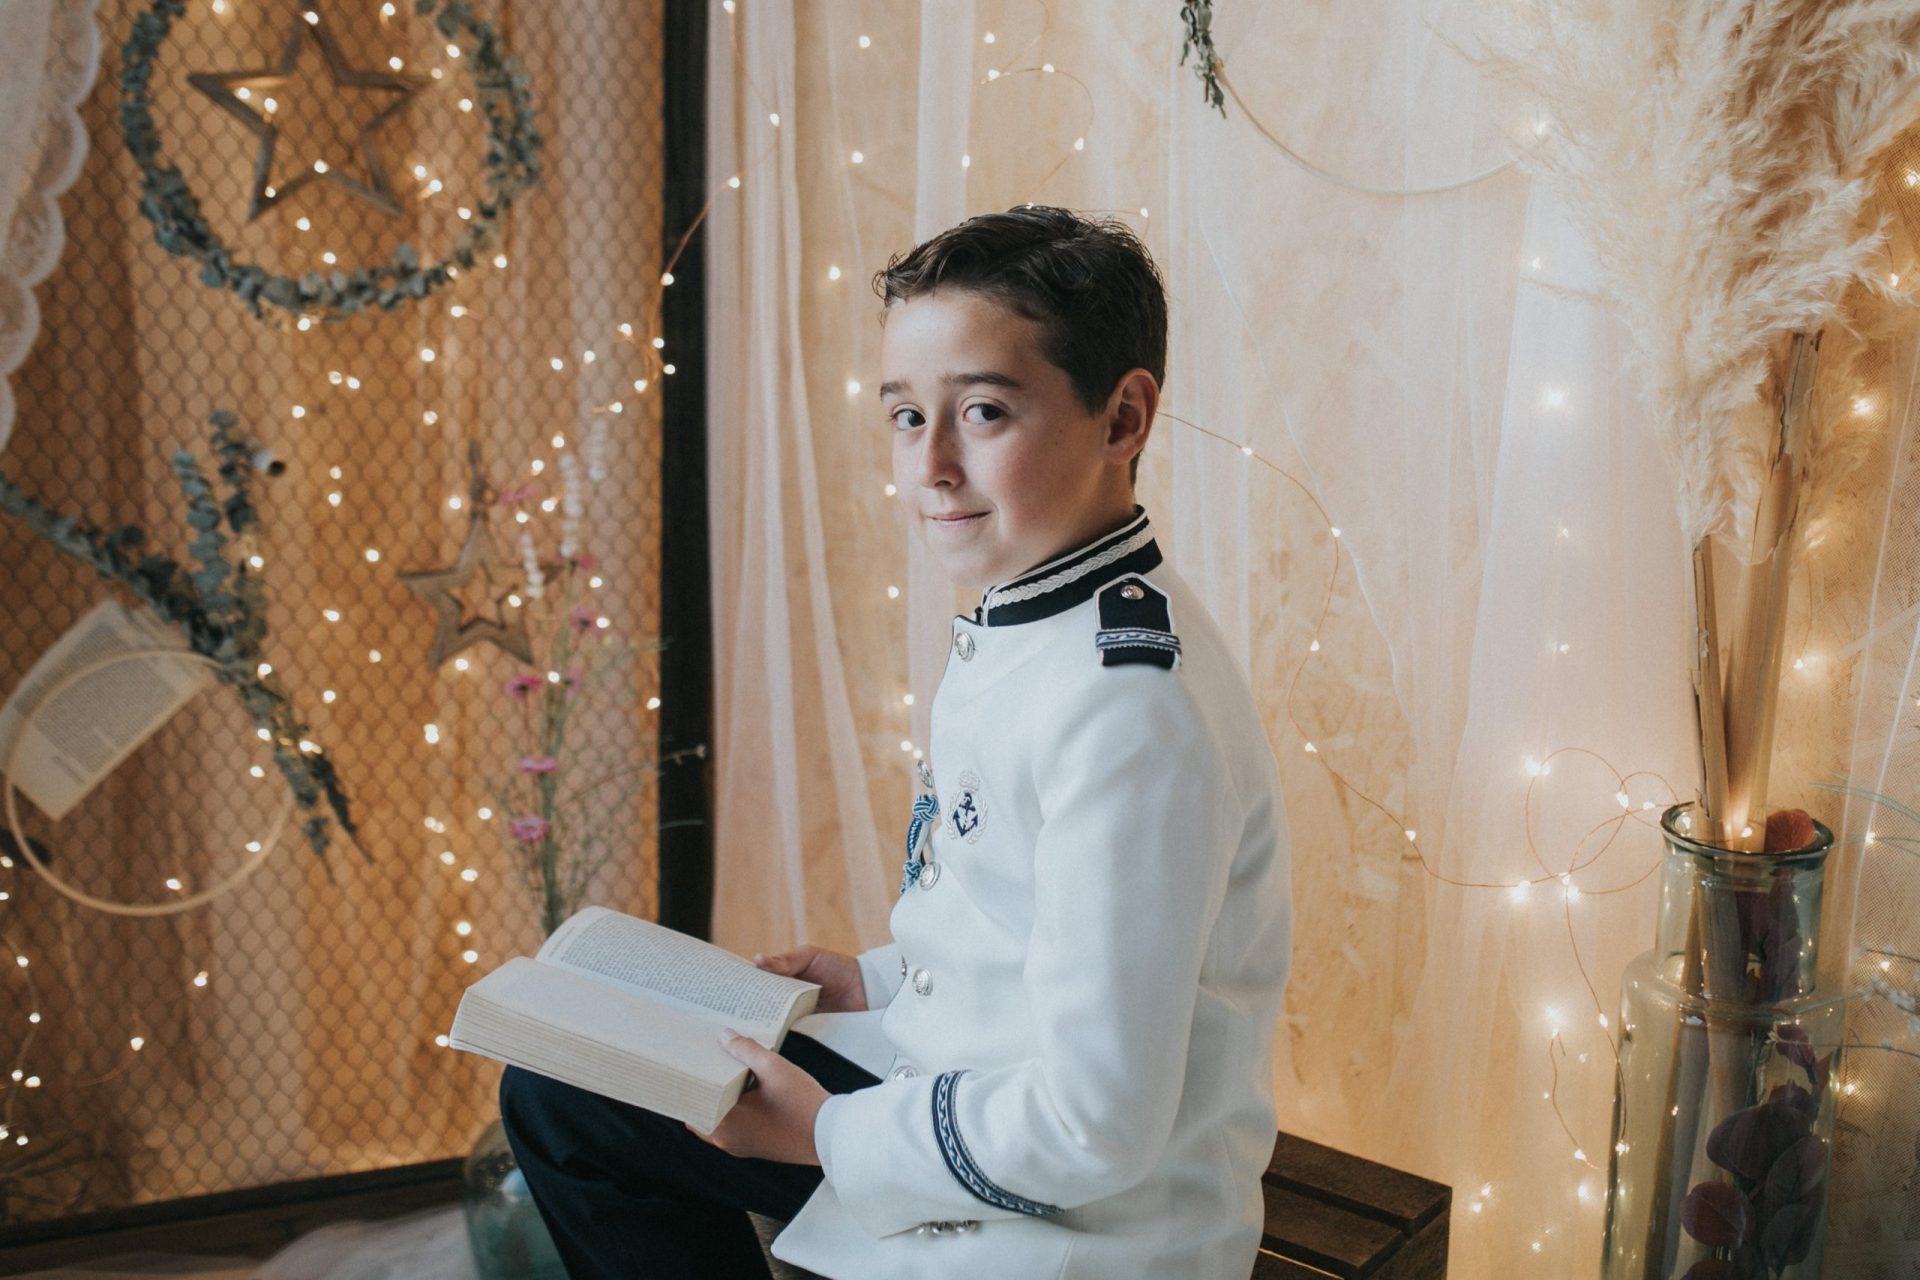 Niño sonriente con su traje de comunión y un libro